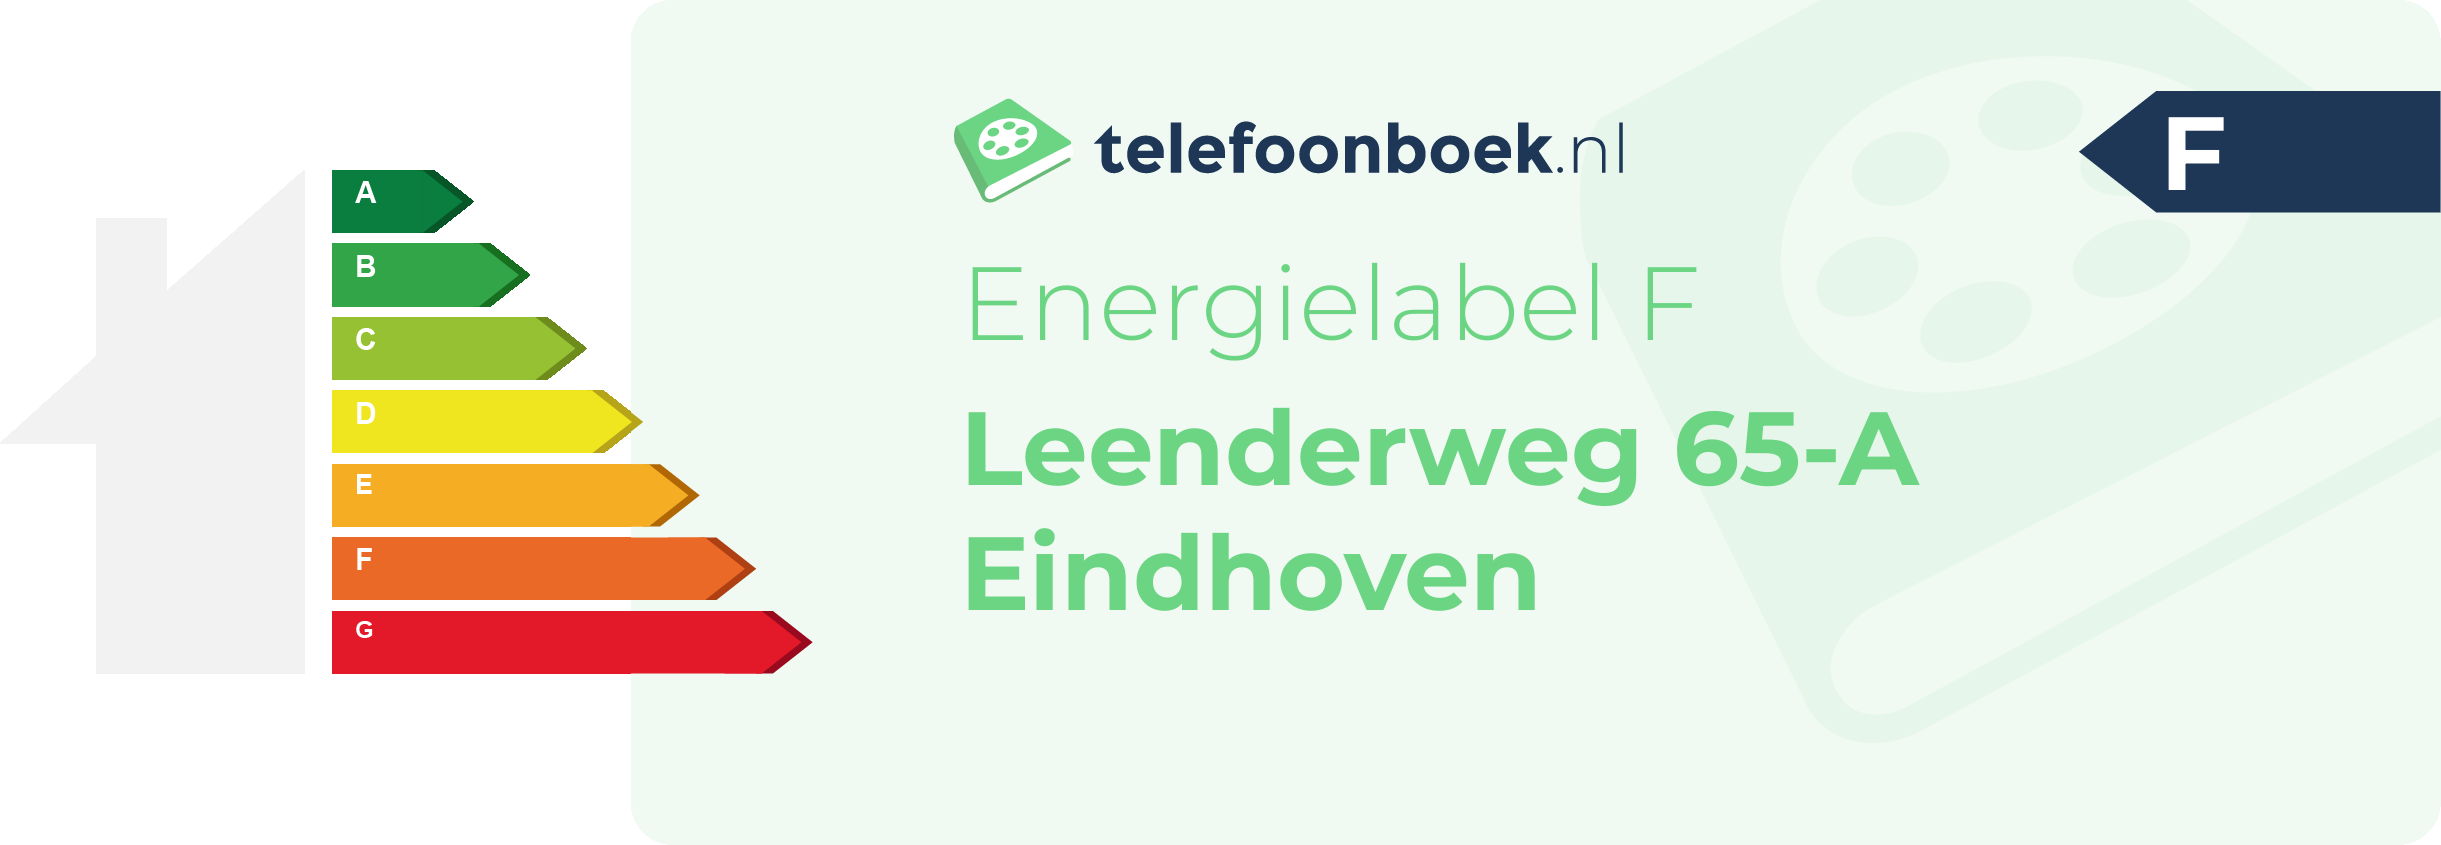 Energielabel Leenderweg 65-A Eindhoven